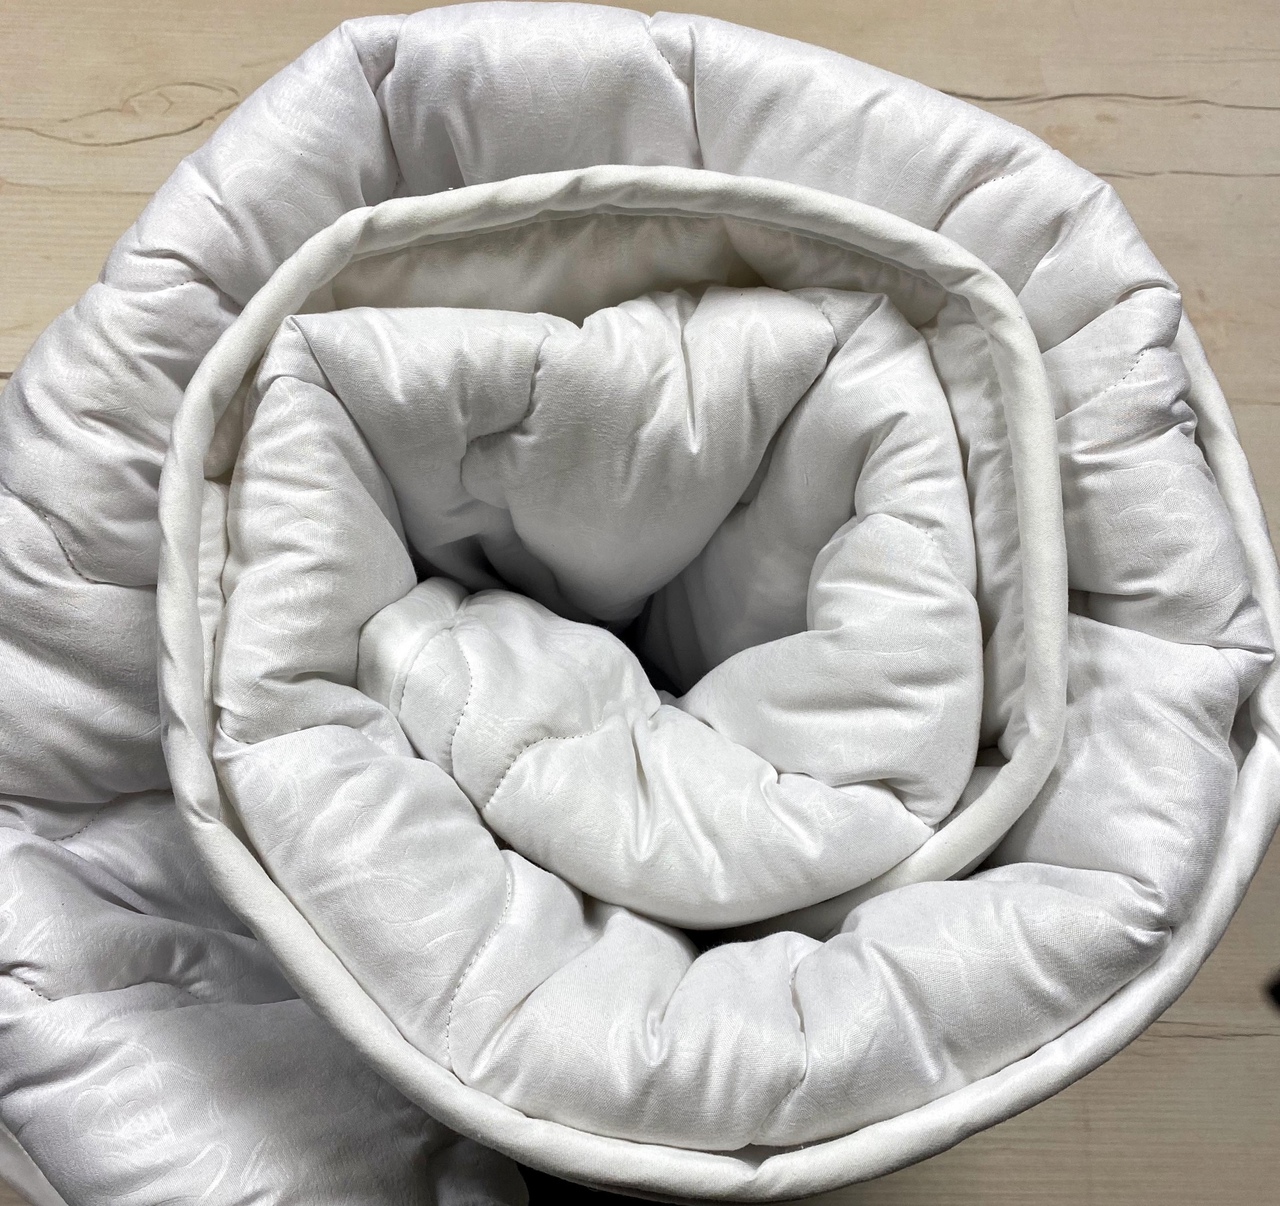 Одеяло "Лавр Текс" шелкопряд стандарт  2.0 спальное